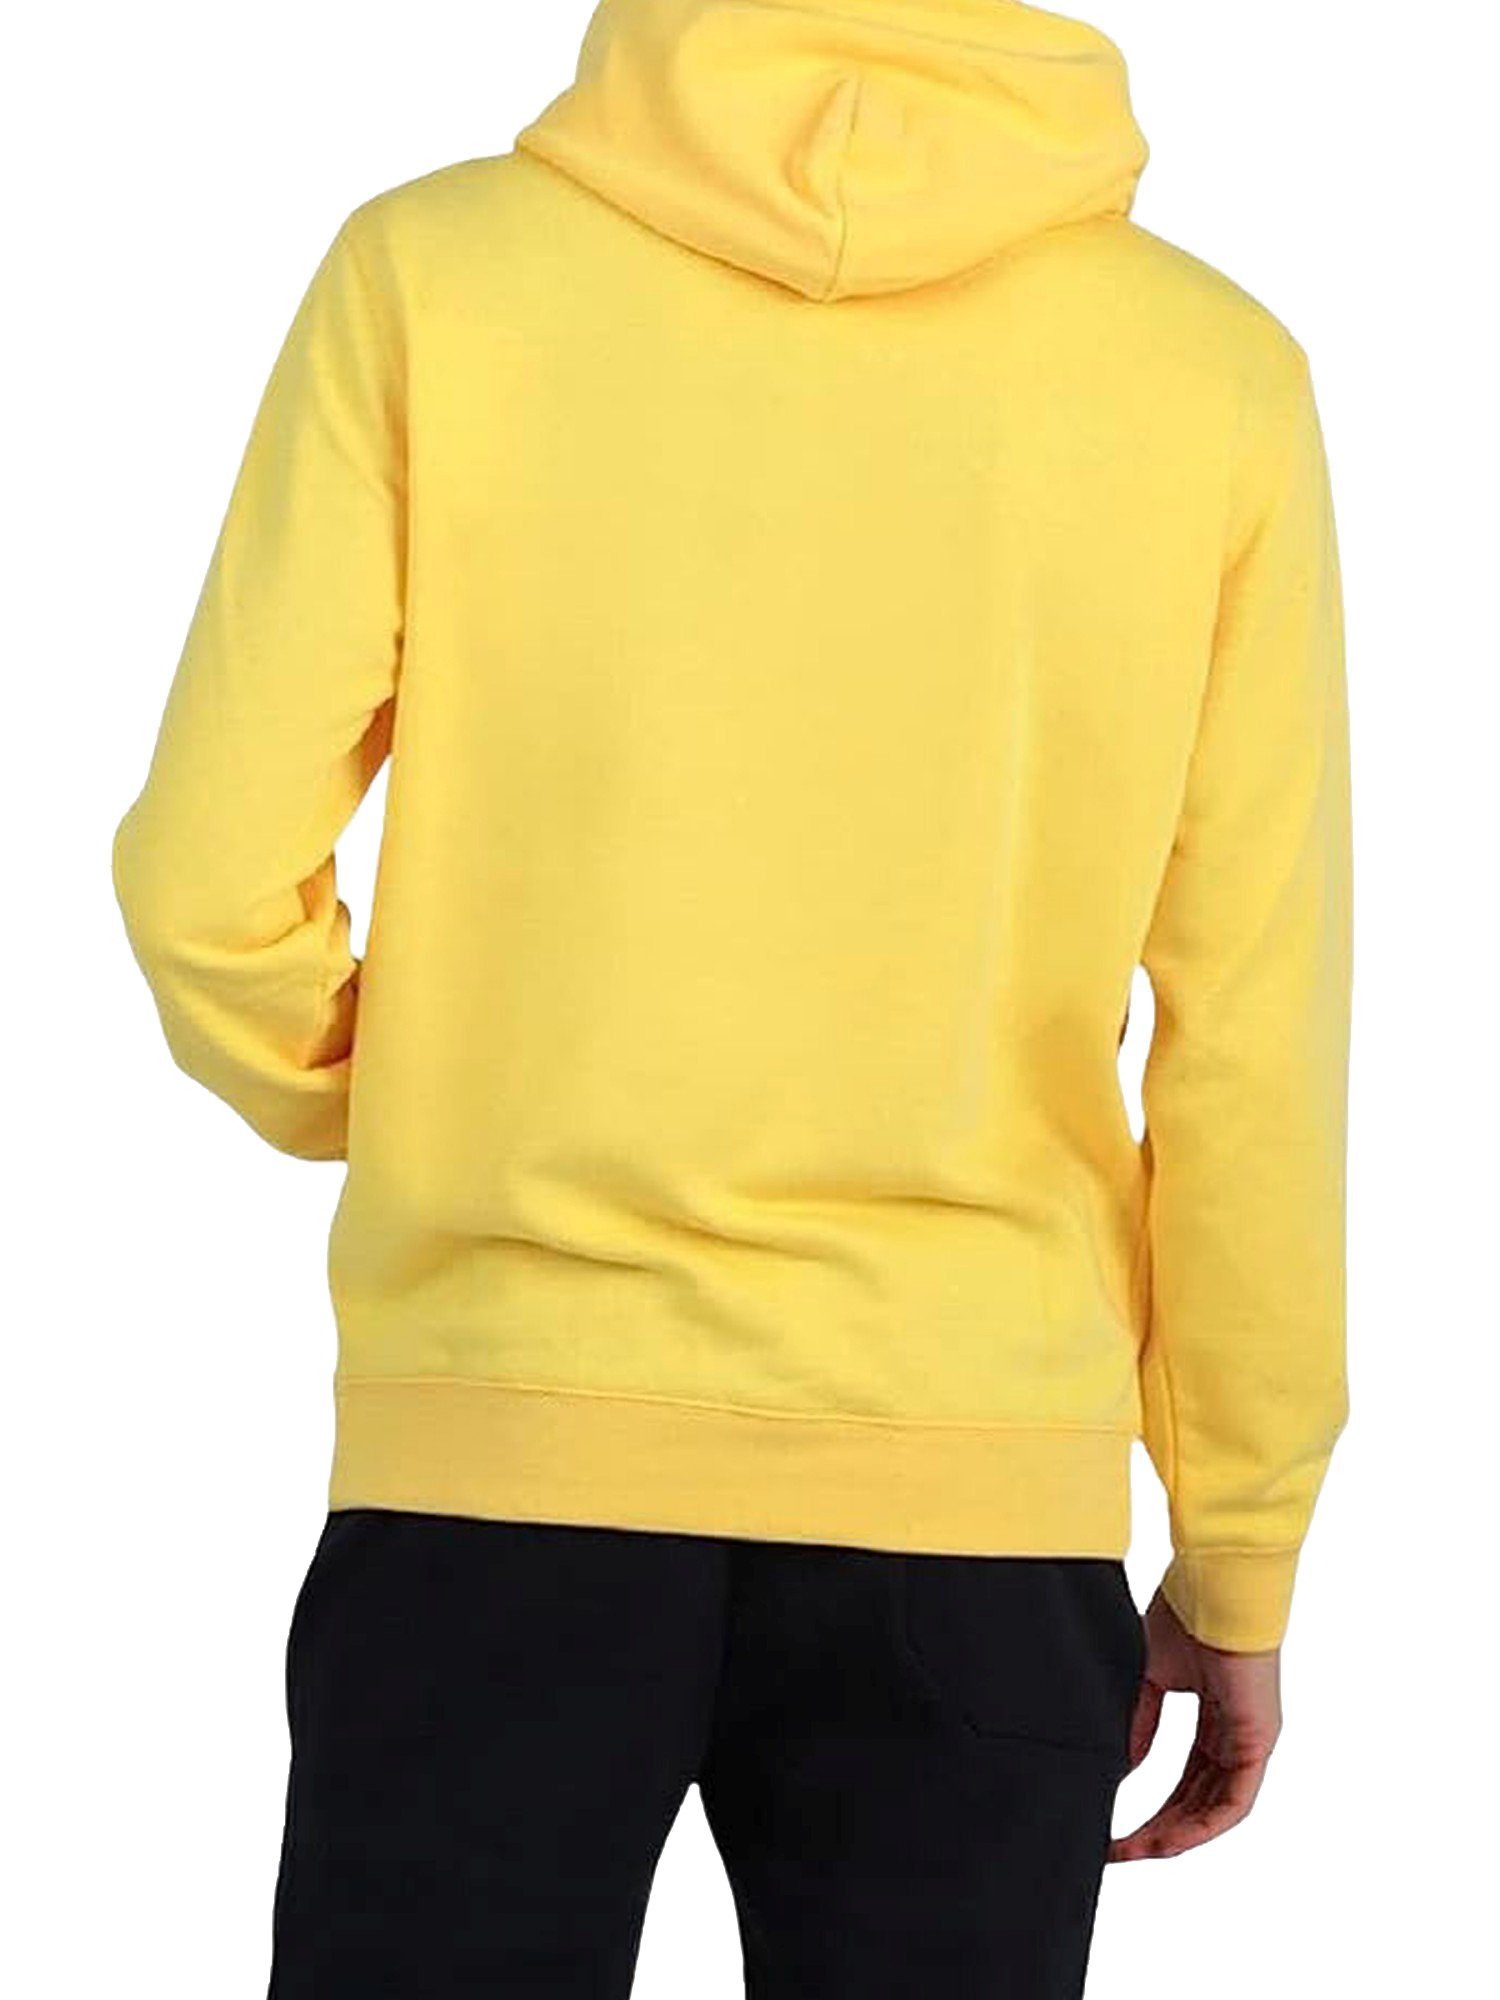 Champion Hoodie Kapuzenpullover Hoodie gelb aus Baumwollmischung mit